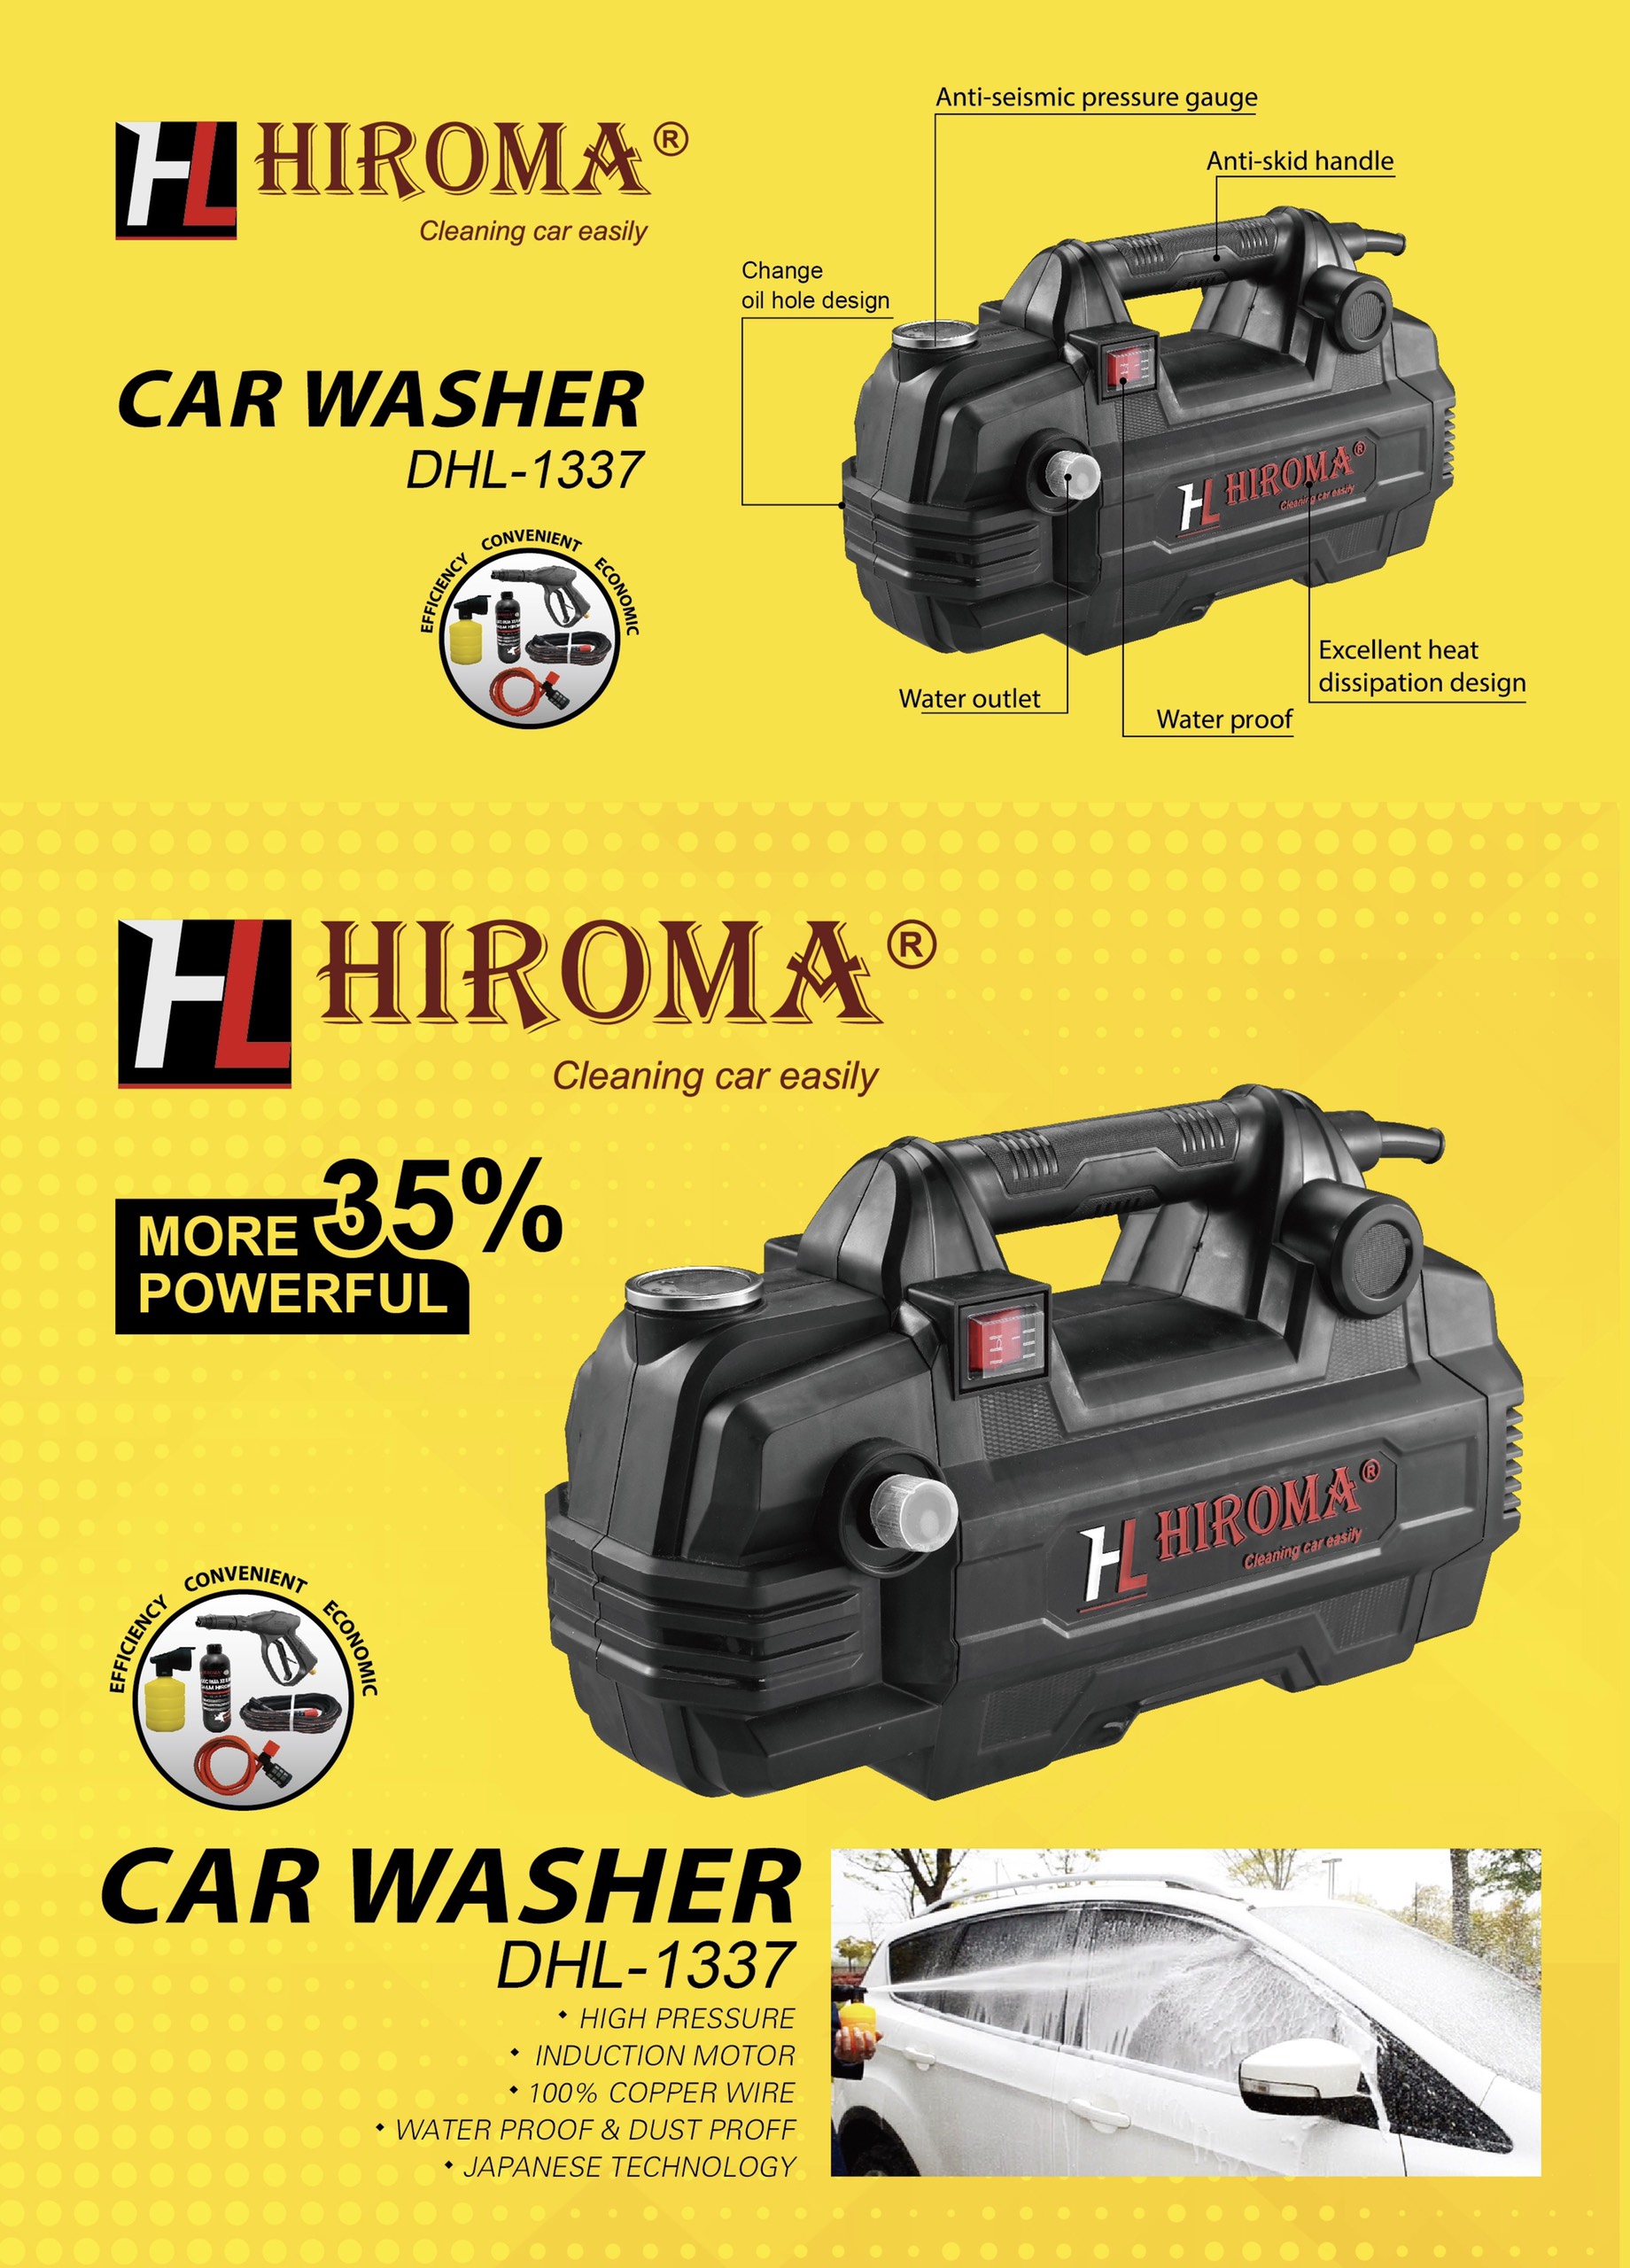 [HCM]Máy rửa xe CHÍNH HÃNG HIROMA DHL - 1337 MODEL MỚI NHẤT 2020 công suất 2200W dòng máy rửa xe gia đình chính hãng đẹp nhất mạnh mẽ bền bỉ được đa số khách hàng tin yêu và chọn lựa